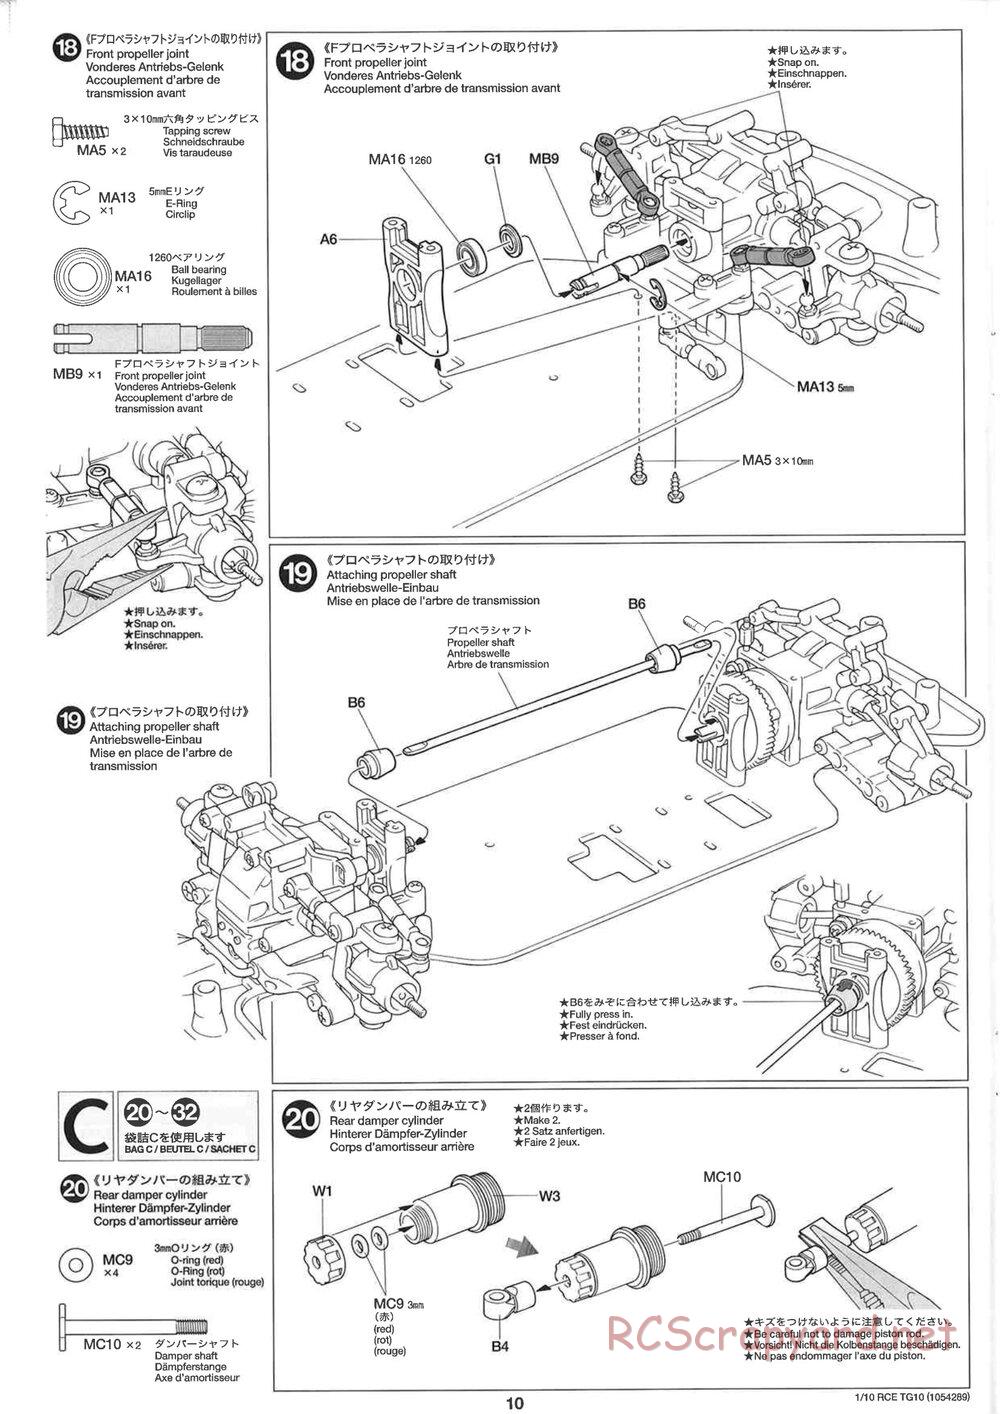 Tamiya - TG10 Mk.1 Chassis - Manual - Page 10